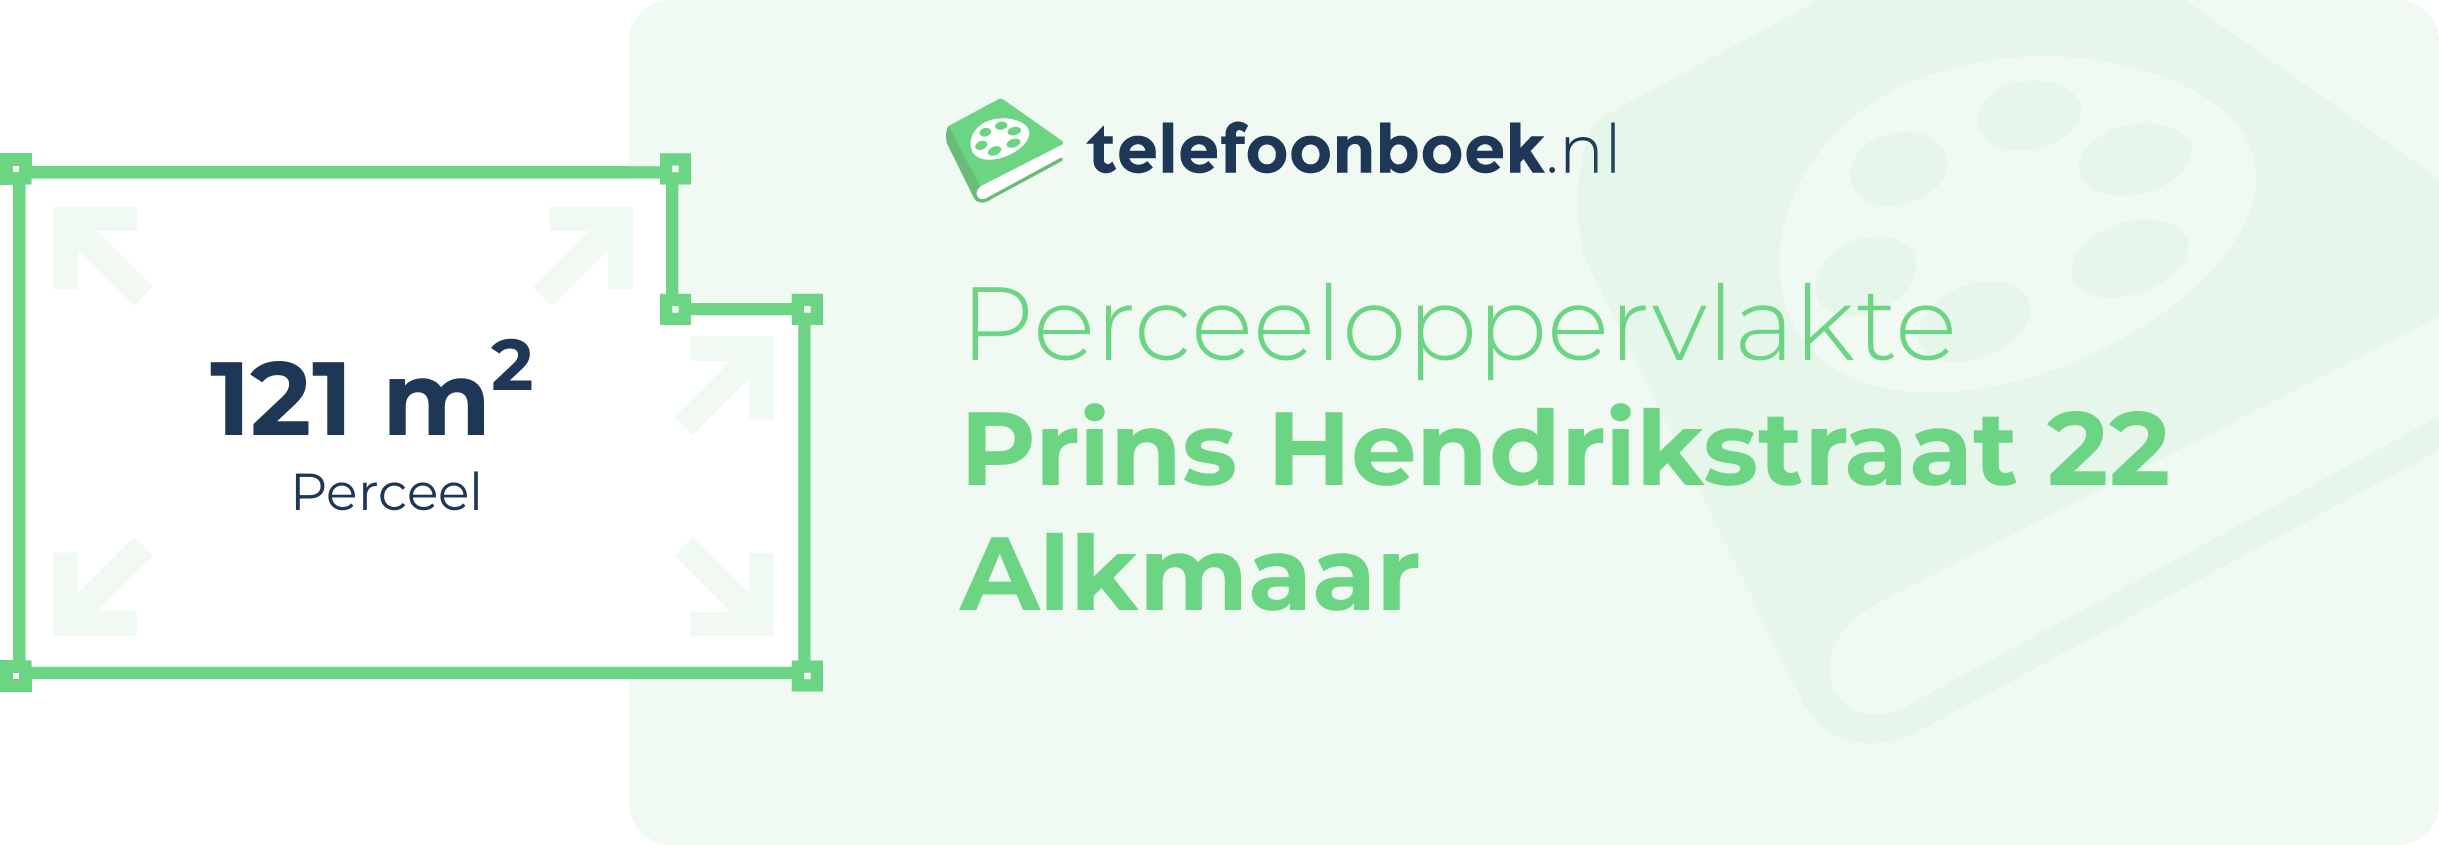 Perceeloppervlakte Prins Hendrikstraat 22 Alkmaar